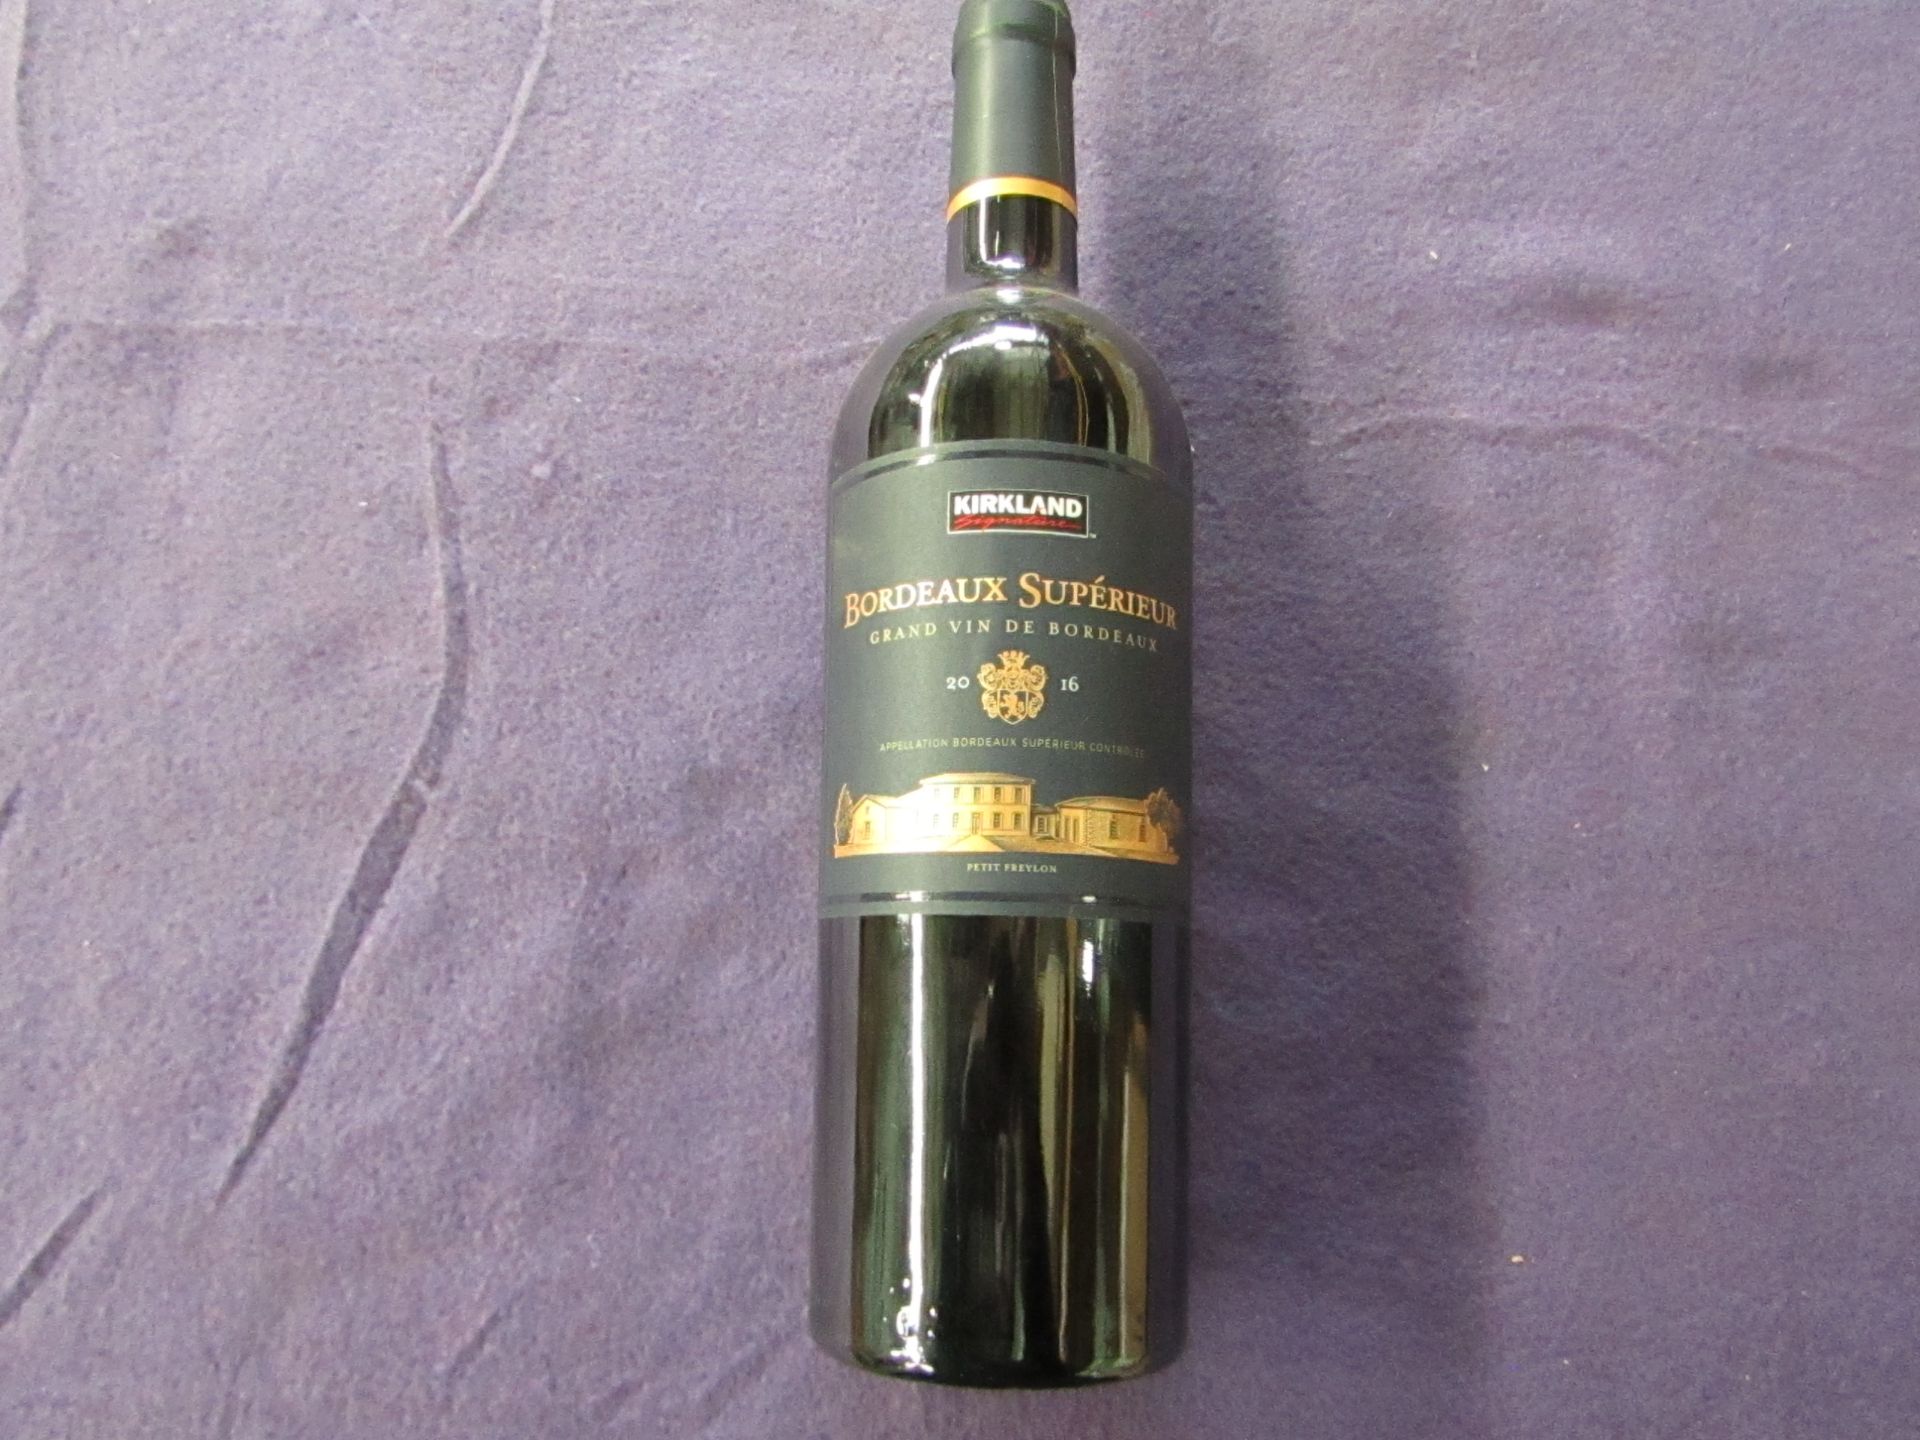 5x Bottles of Kirkland Signature Bordeaux Superieur 2016 - Red - RRP £52